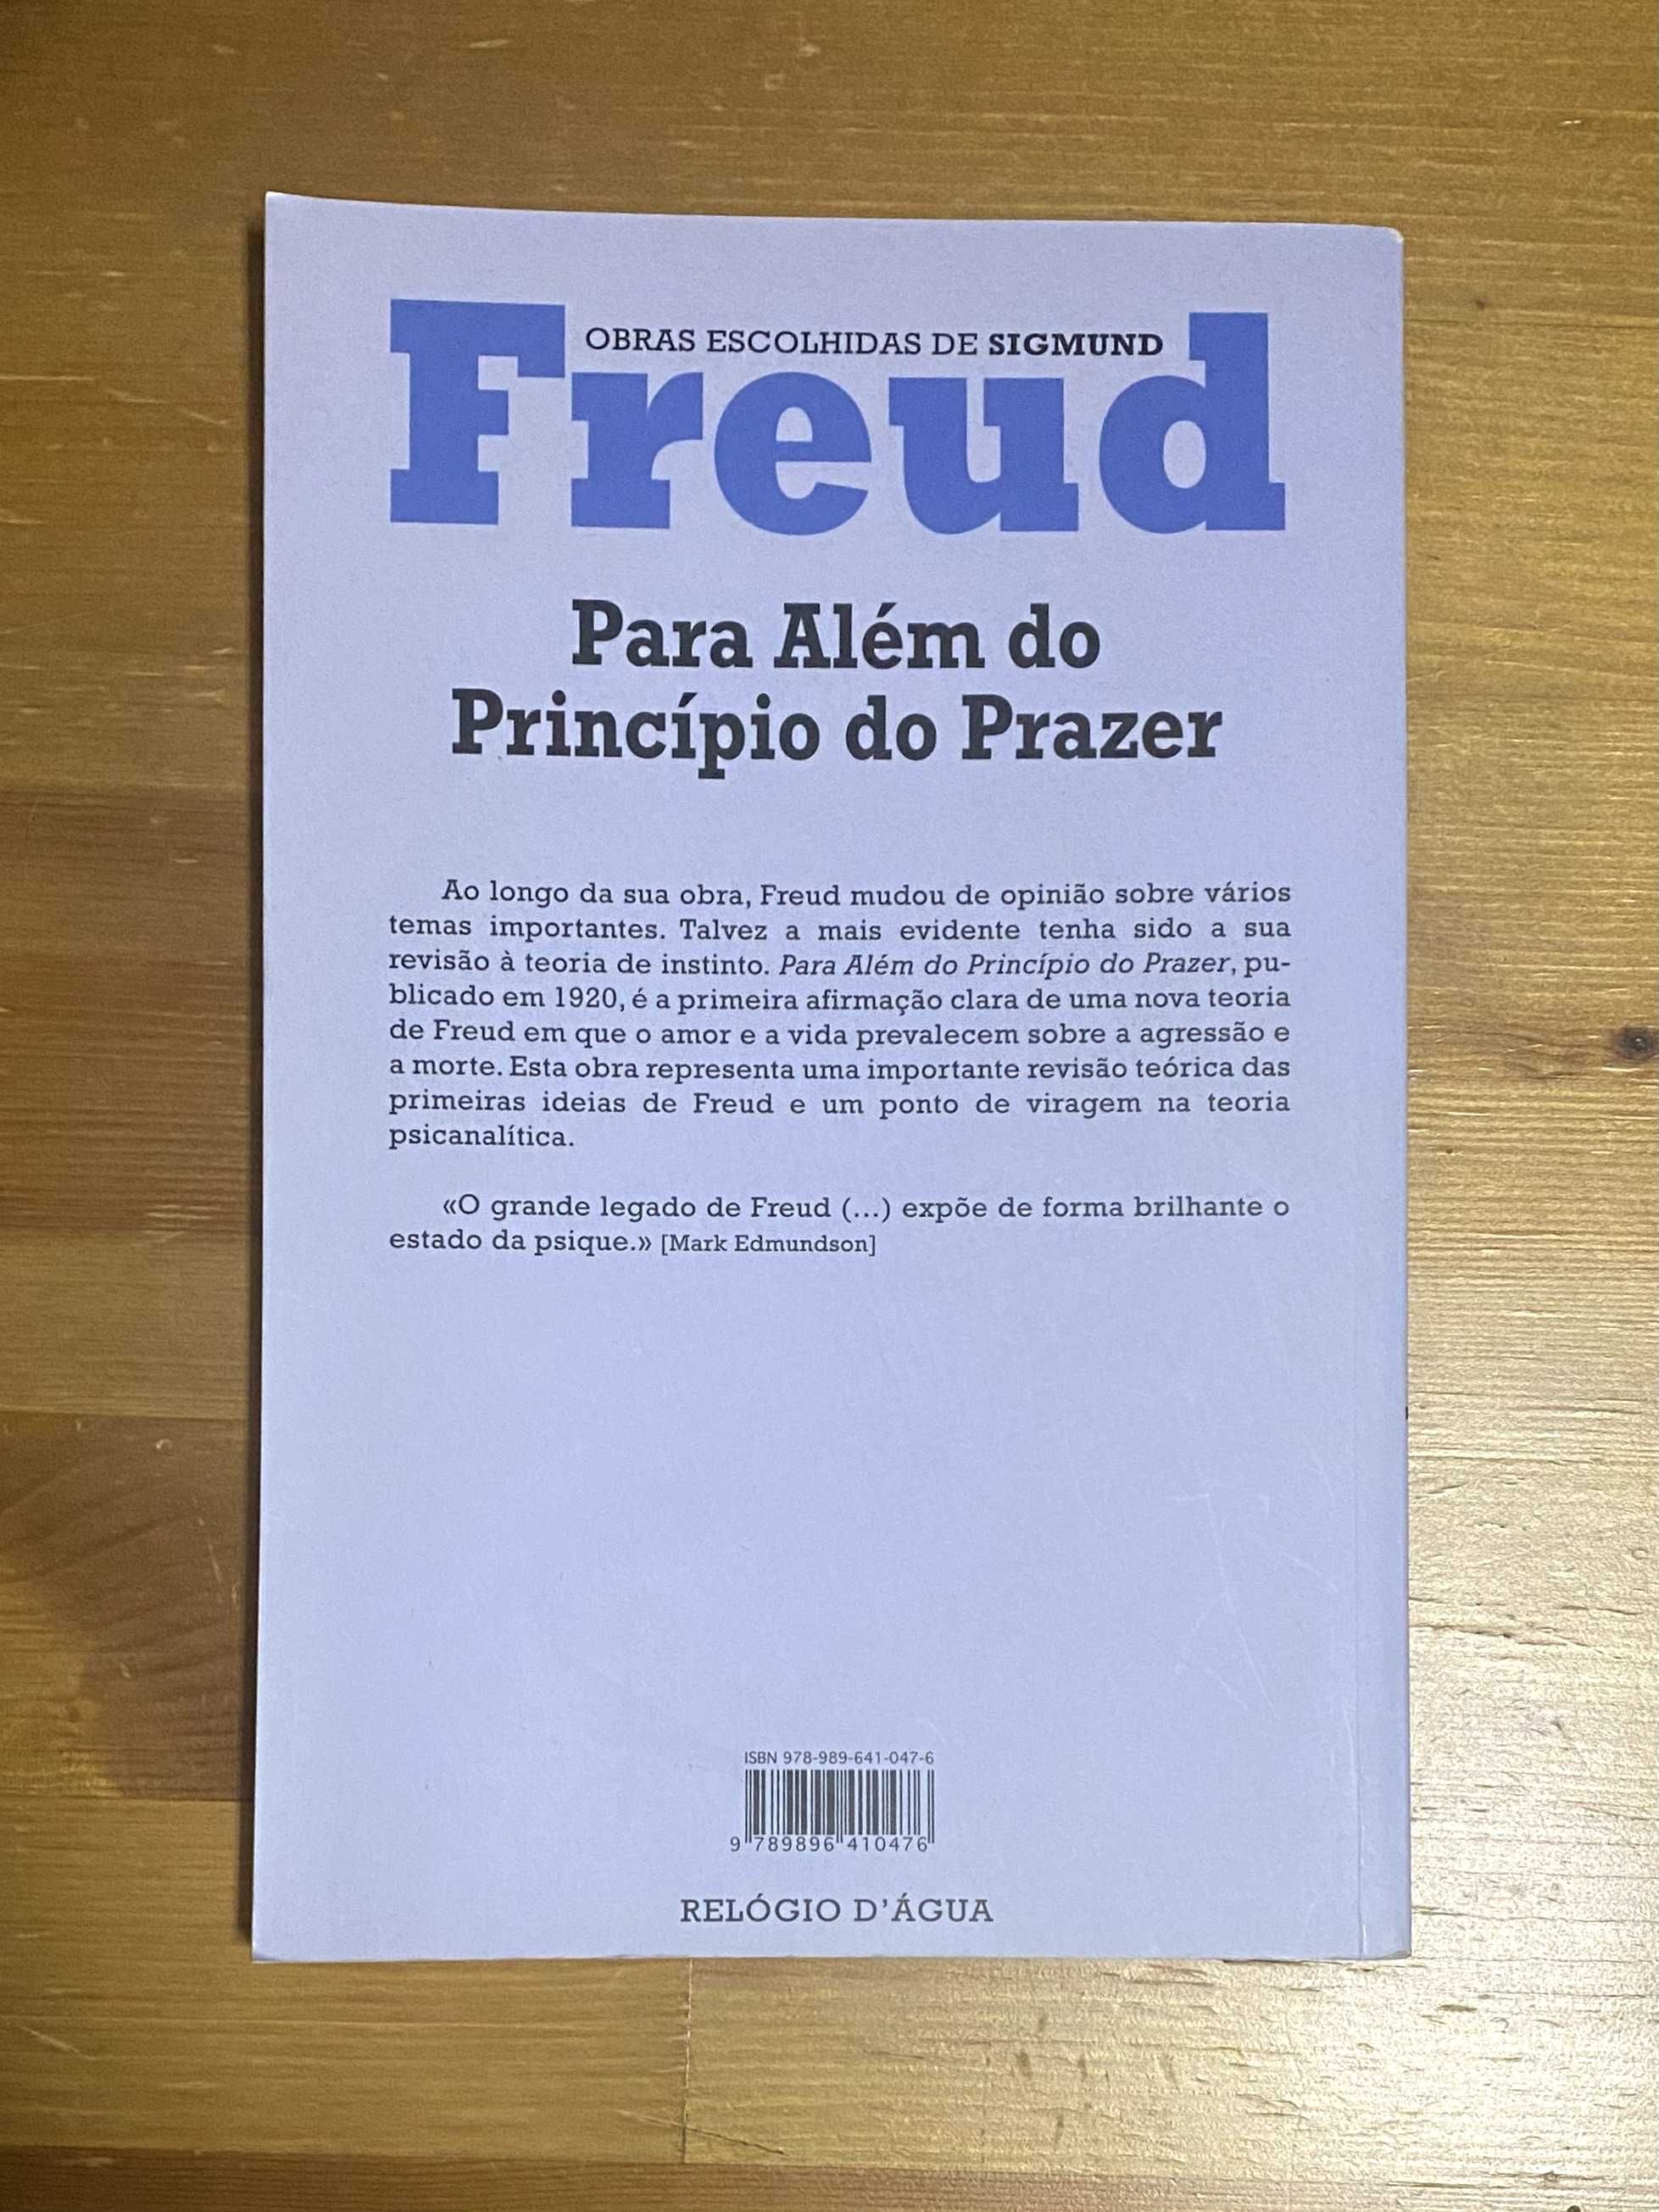 Livro "Para Além do Princípio do Prazer" de Sigmund Freud